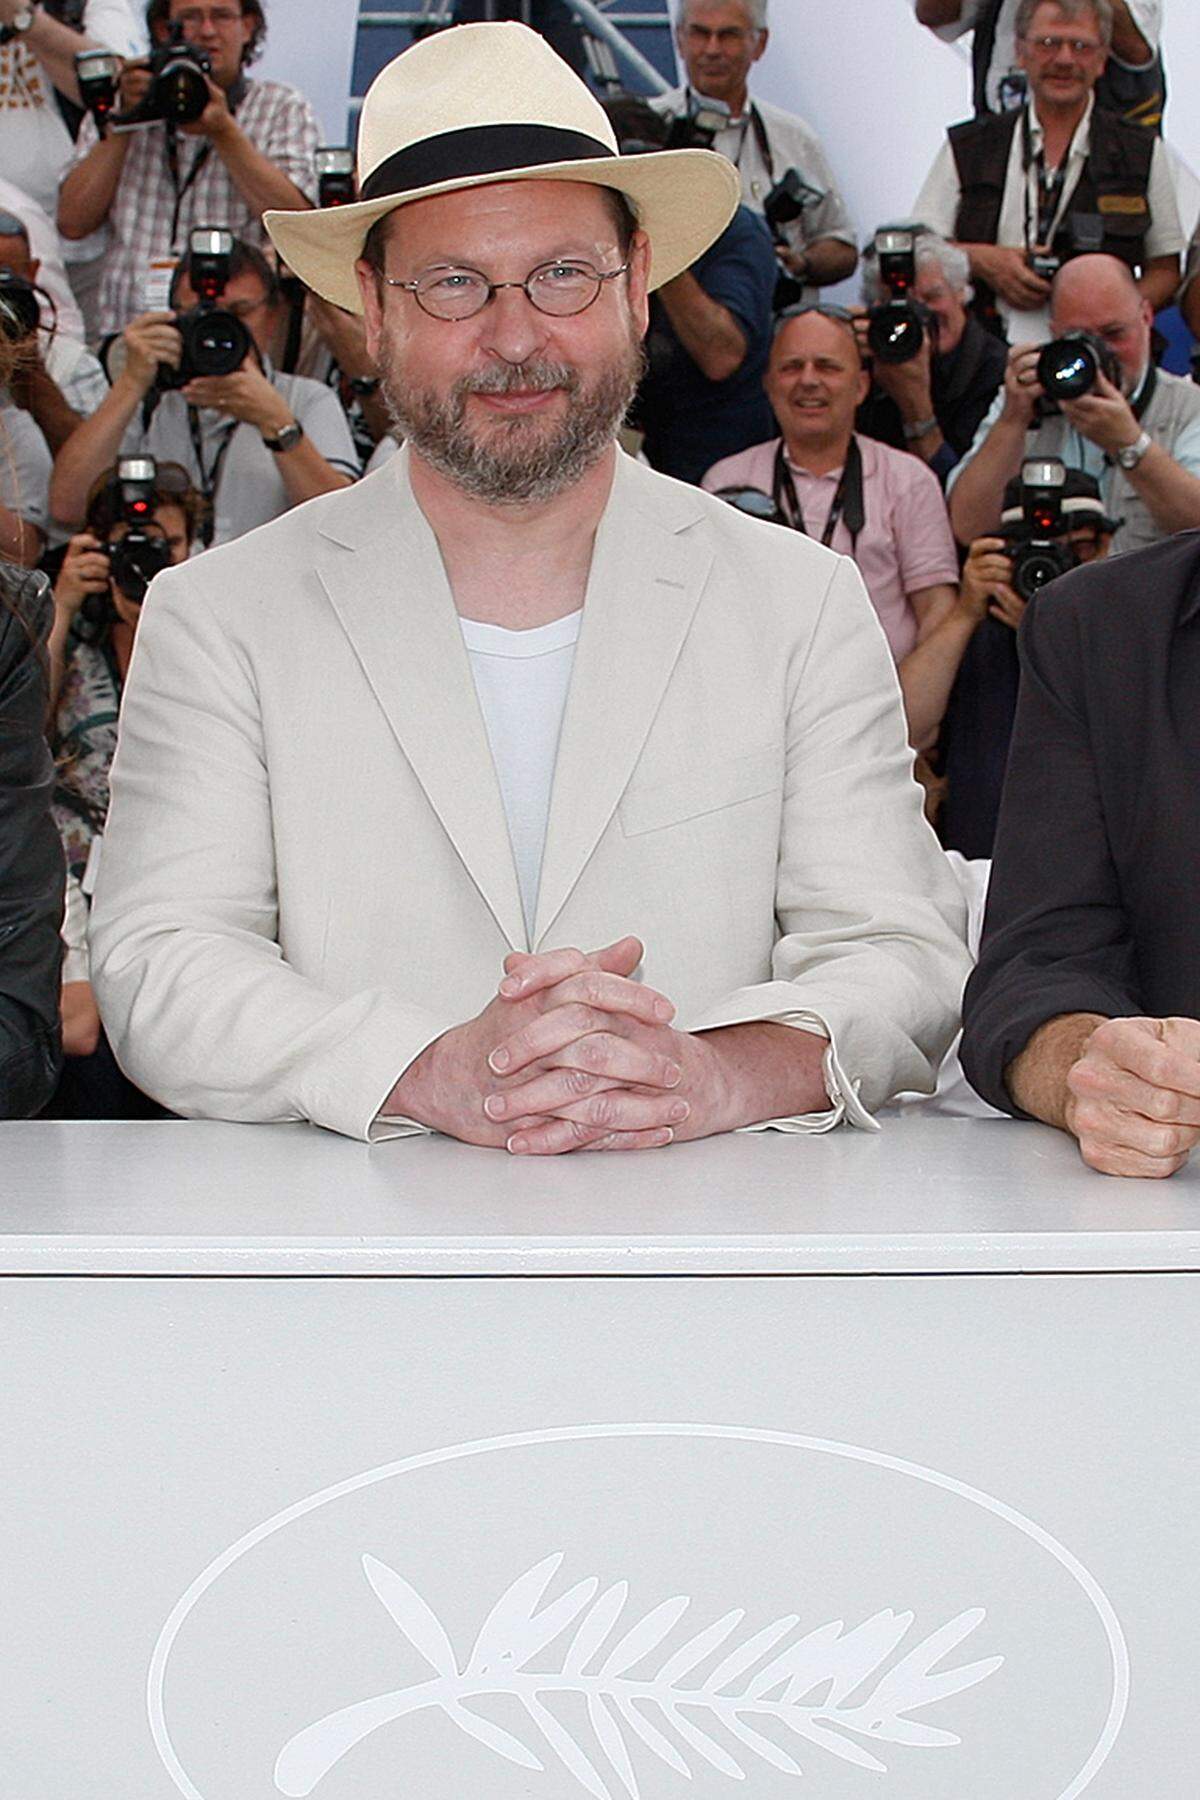 Im kommenden Jahr soll Von Triers neuer Film "The House That Jack Built" - benannt nach einem Kinderreim - fertig sein. Spannend wird, wo der Regisseur ihn vorstellen wird. Ob erneut - wie "Nymphomaniac" bei der Berlinale - oder wieder in Cannes, wo der Regisseur seine bisher größten Erfolge feierte.